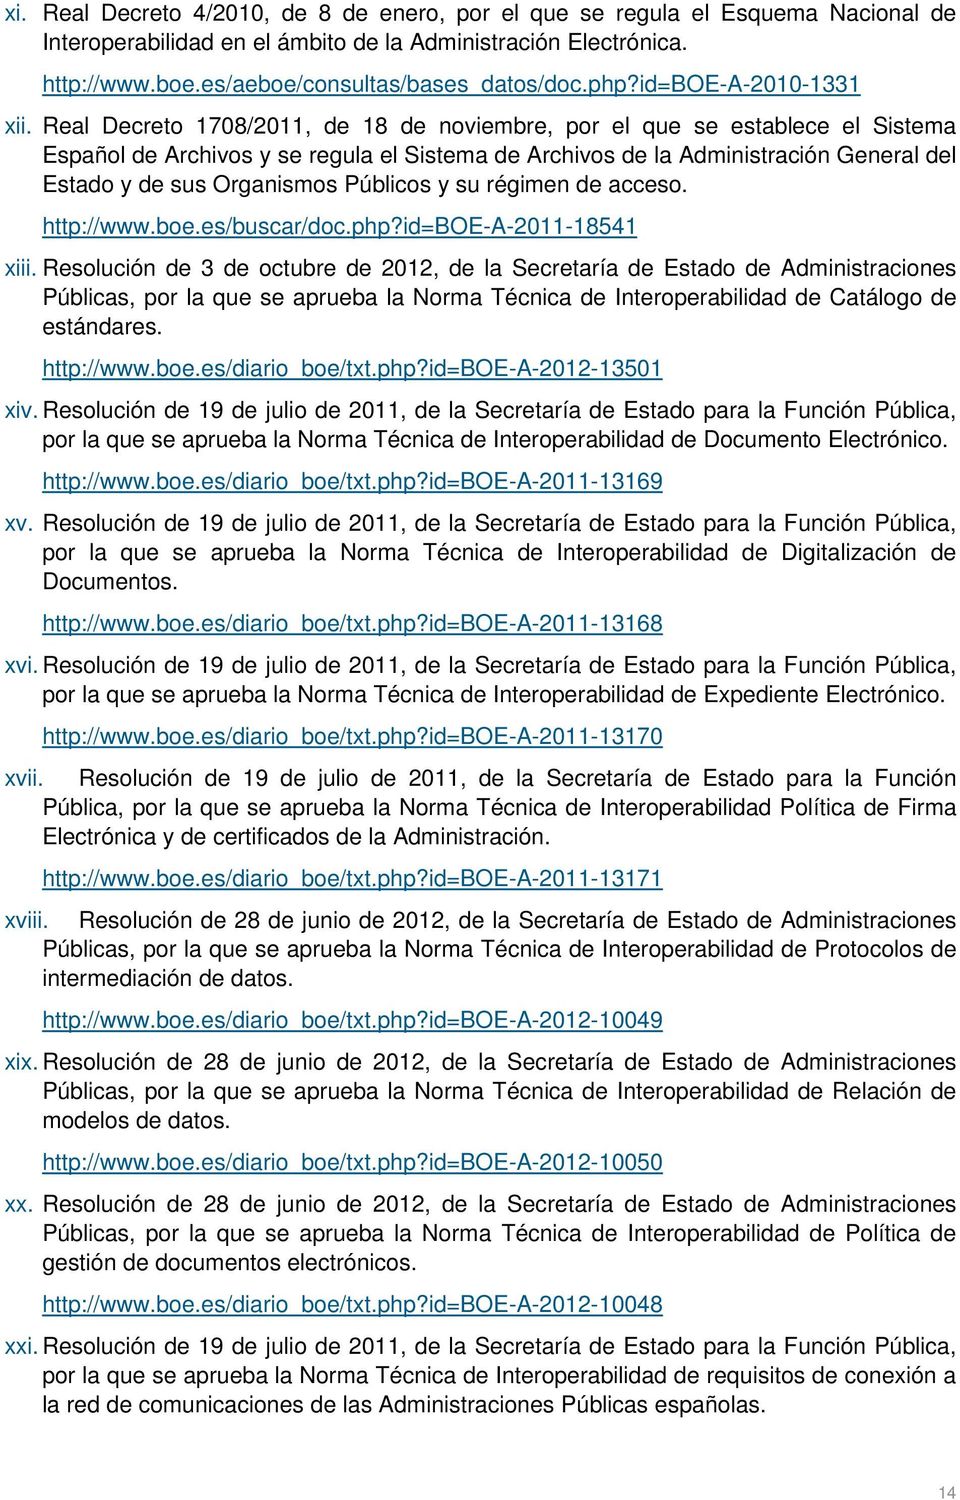 Real Decreto 1708/2011, de 18 de noviembre, por el que se establece el Sistema Español de Archivos y se regula el Sistema de Archivos de la Administración General del Estado y de sus Organismos